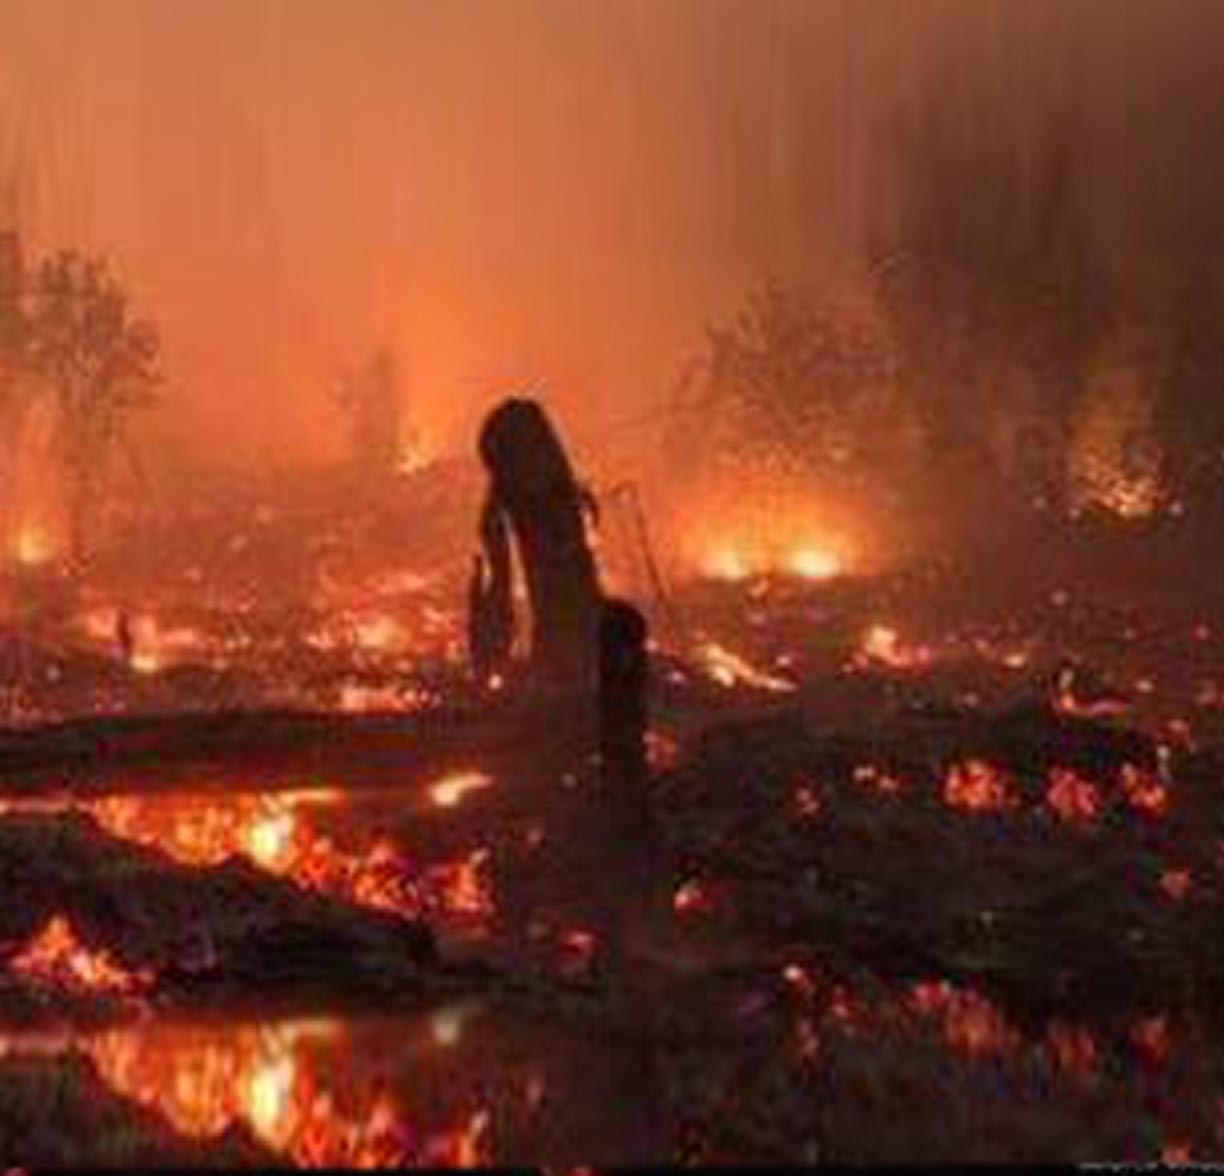 Kebakaran hutan dan penebangan hutan secara liar dapat menyebabkan